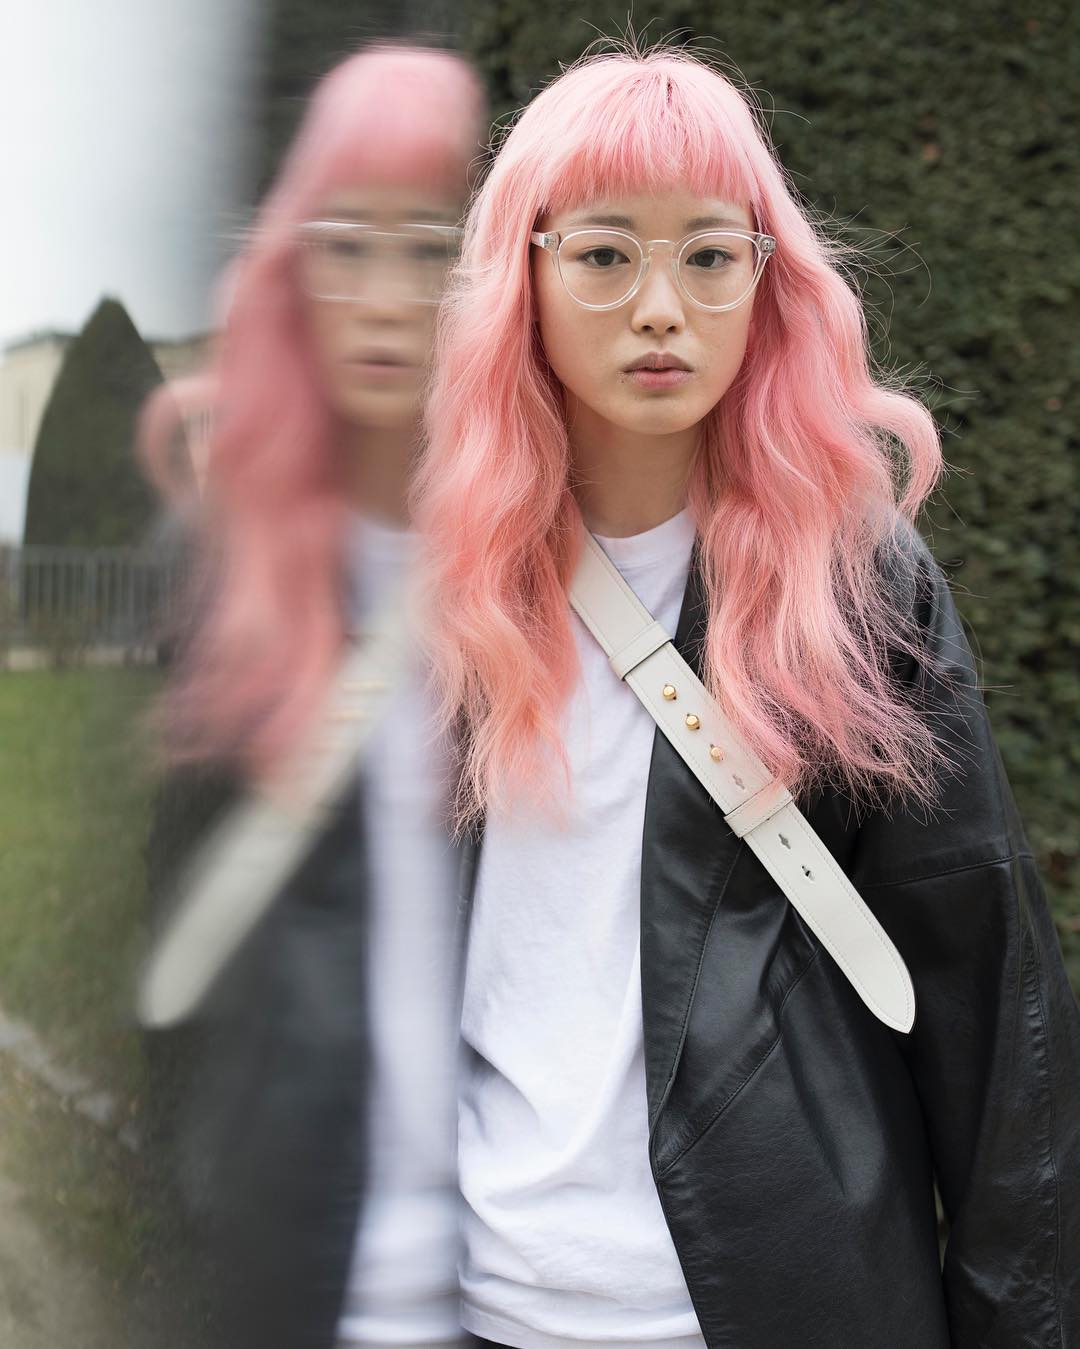 Voguejapan ピンクヘアがトレンドマークのモデル フェルナンダ リーもパリコレ中は移動に大忙し The Bubble Gum Pink Haired Model Waruk Wacoca Japan People Life Style